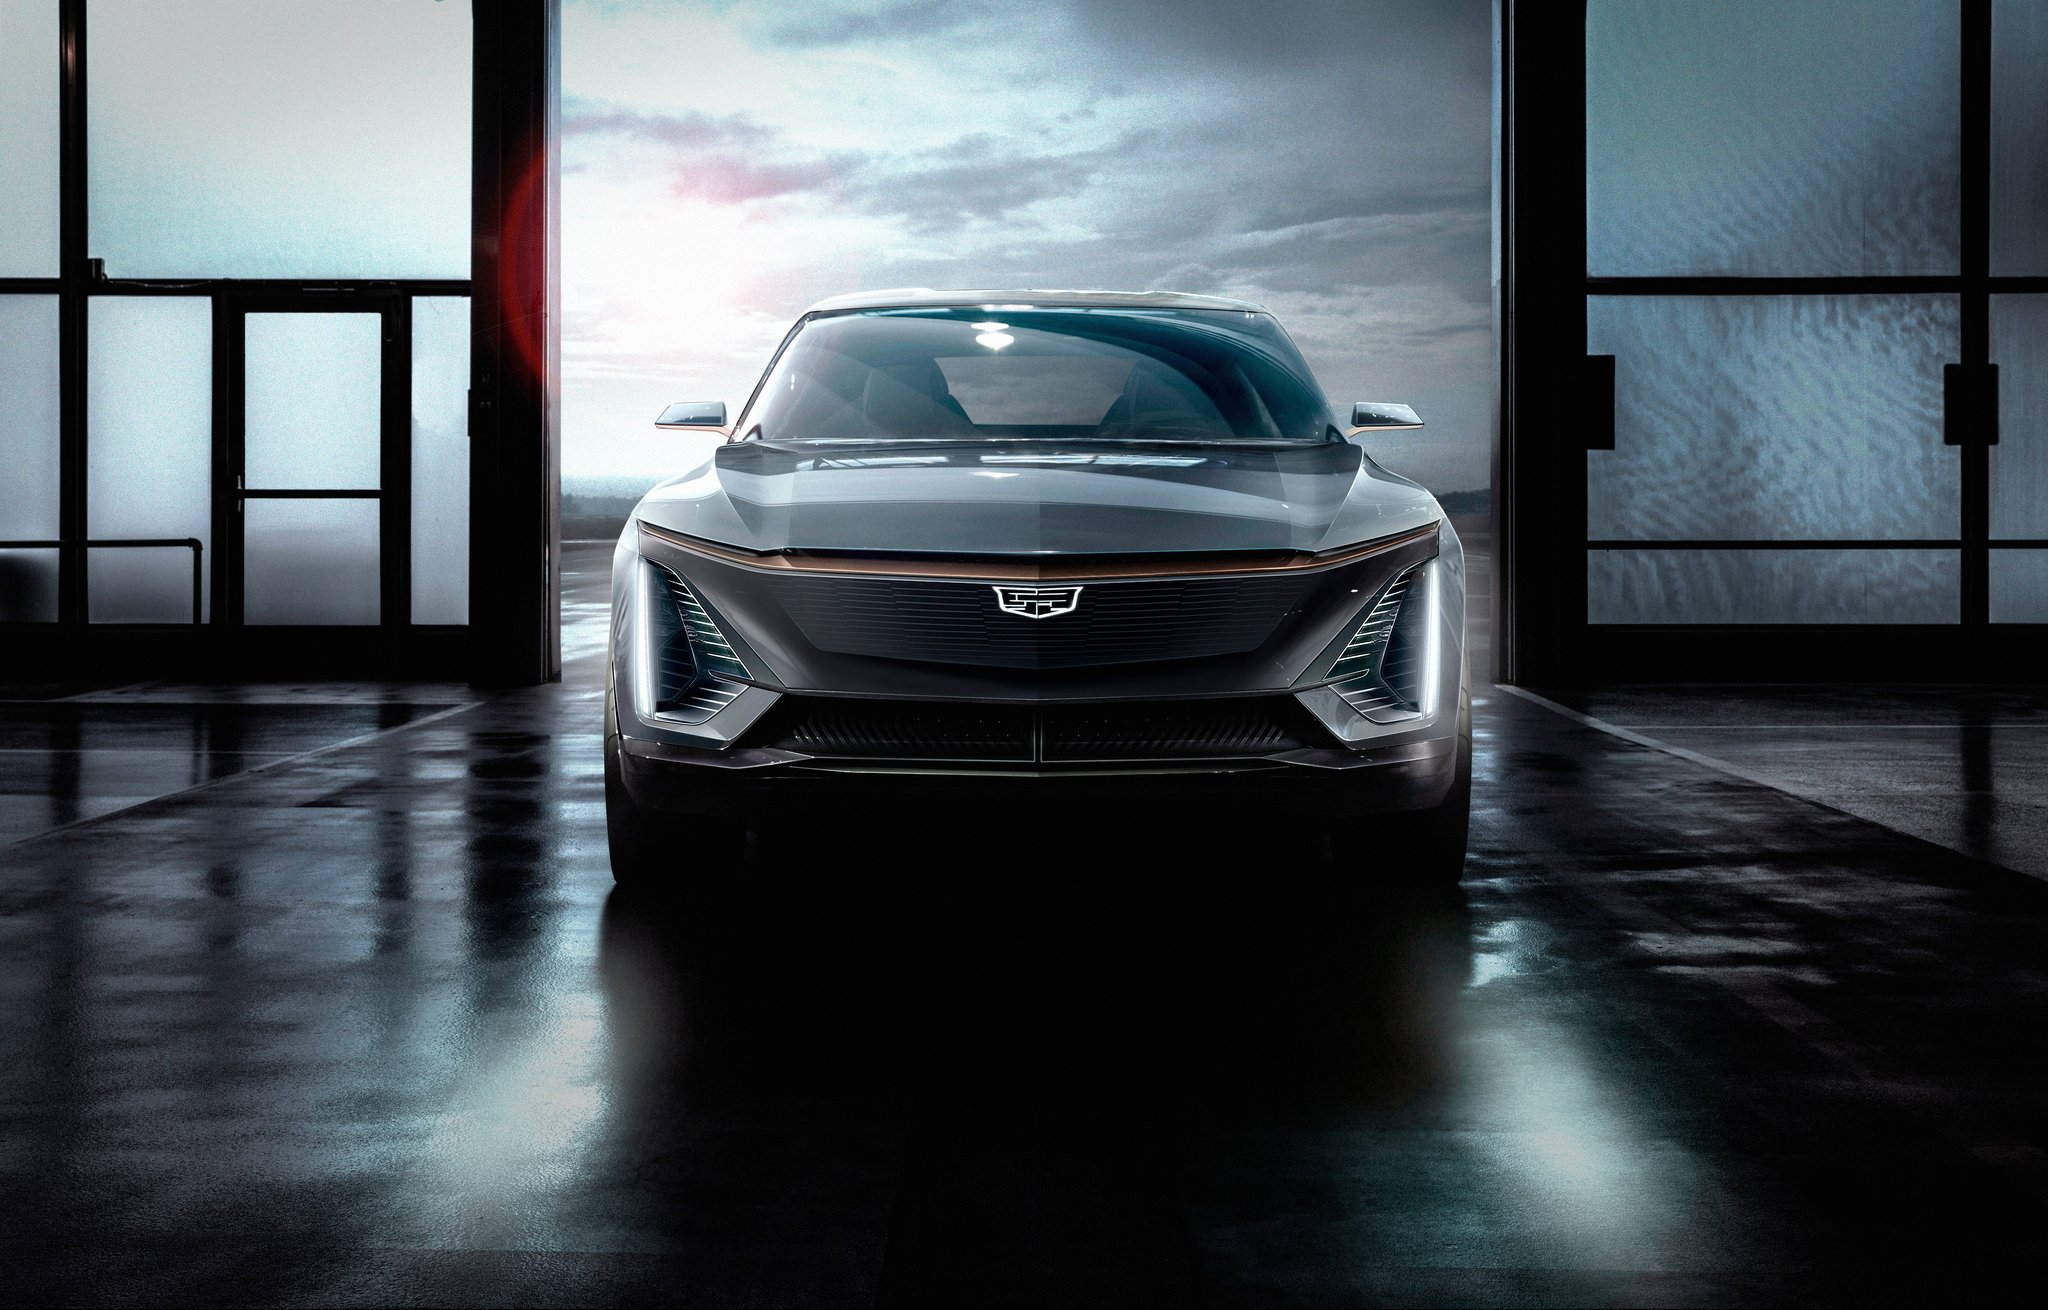 미국 최대 완성차 업체인 GM은 새 전기차 플랫폼인 EV3를 이용해 2021년 고급차 브랜드인 캐딜락 전기차를 선보일 예정이다. [사진 캐딜락]